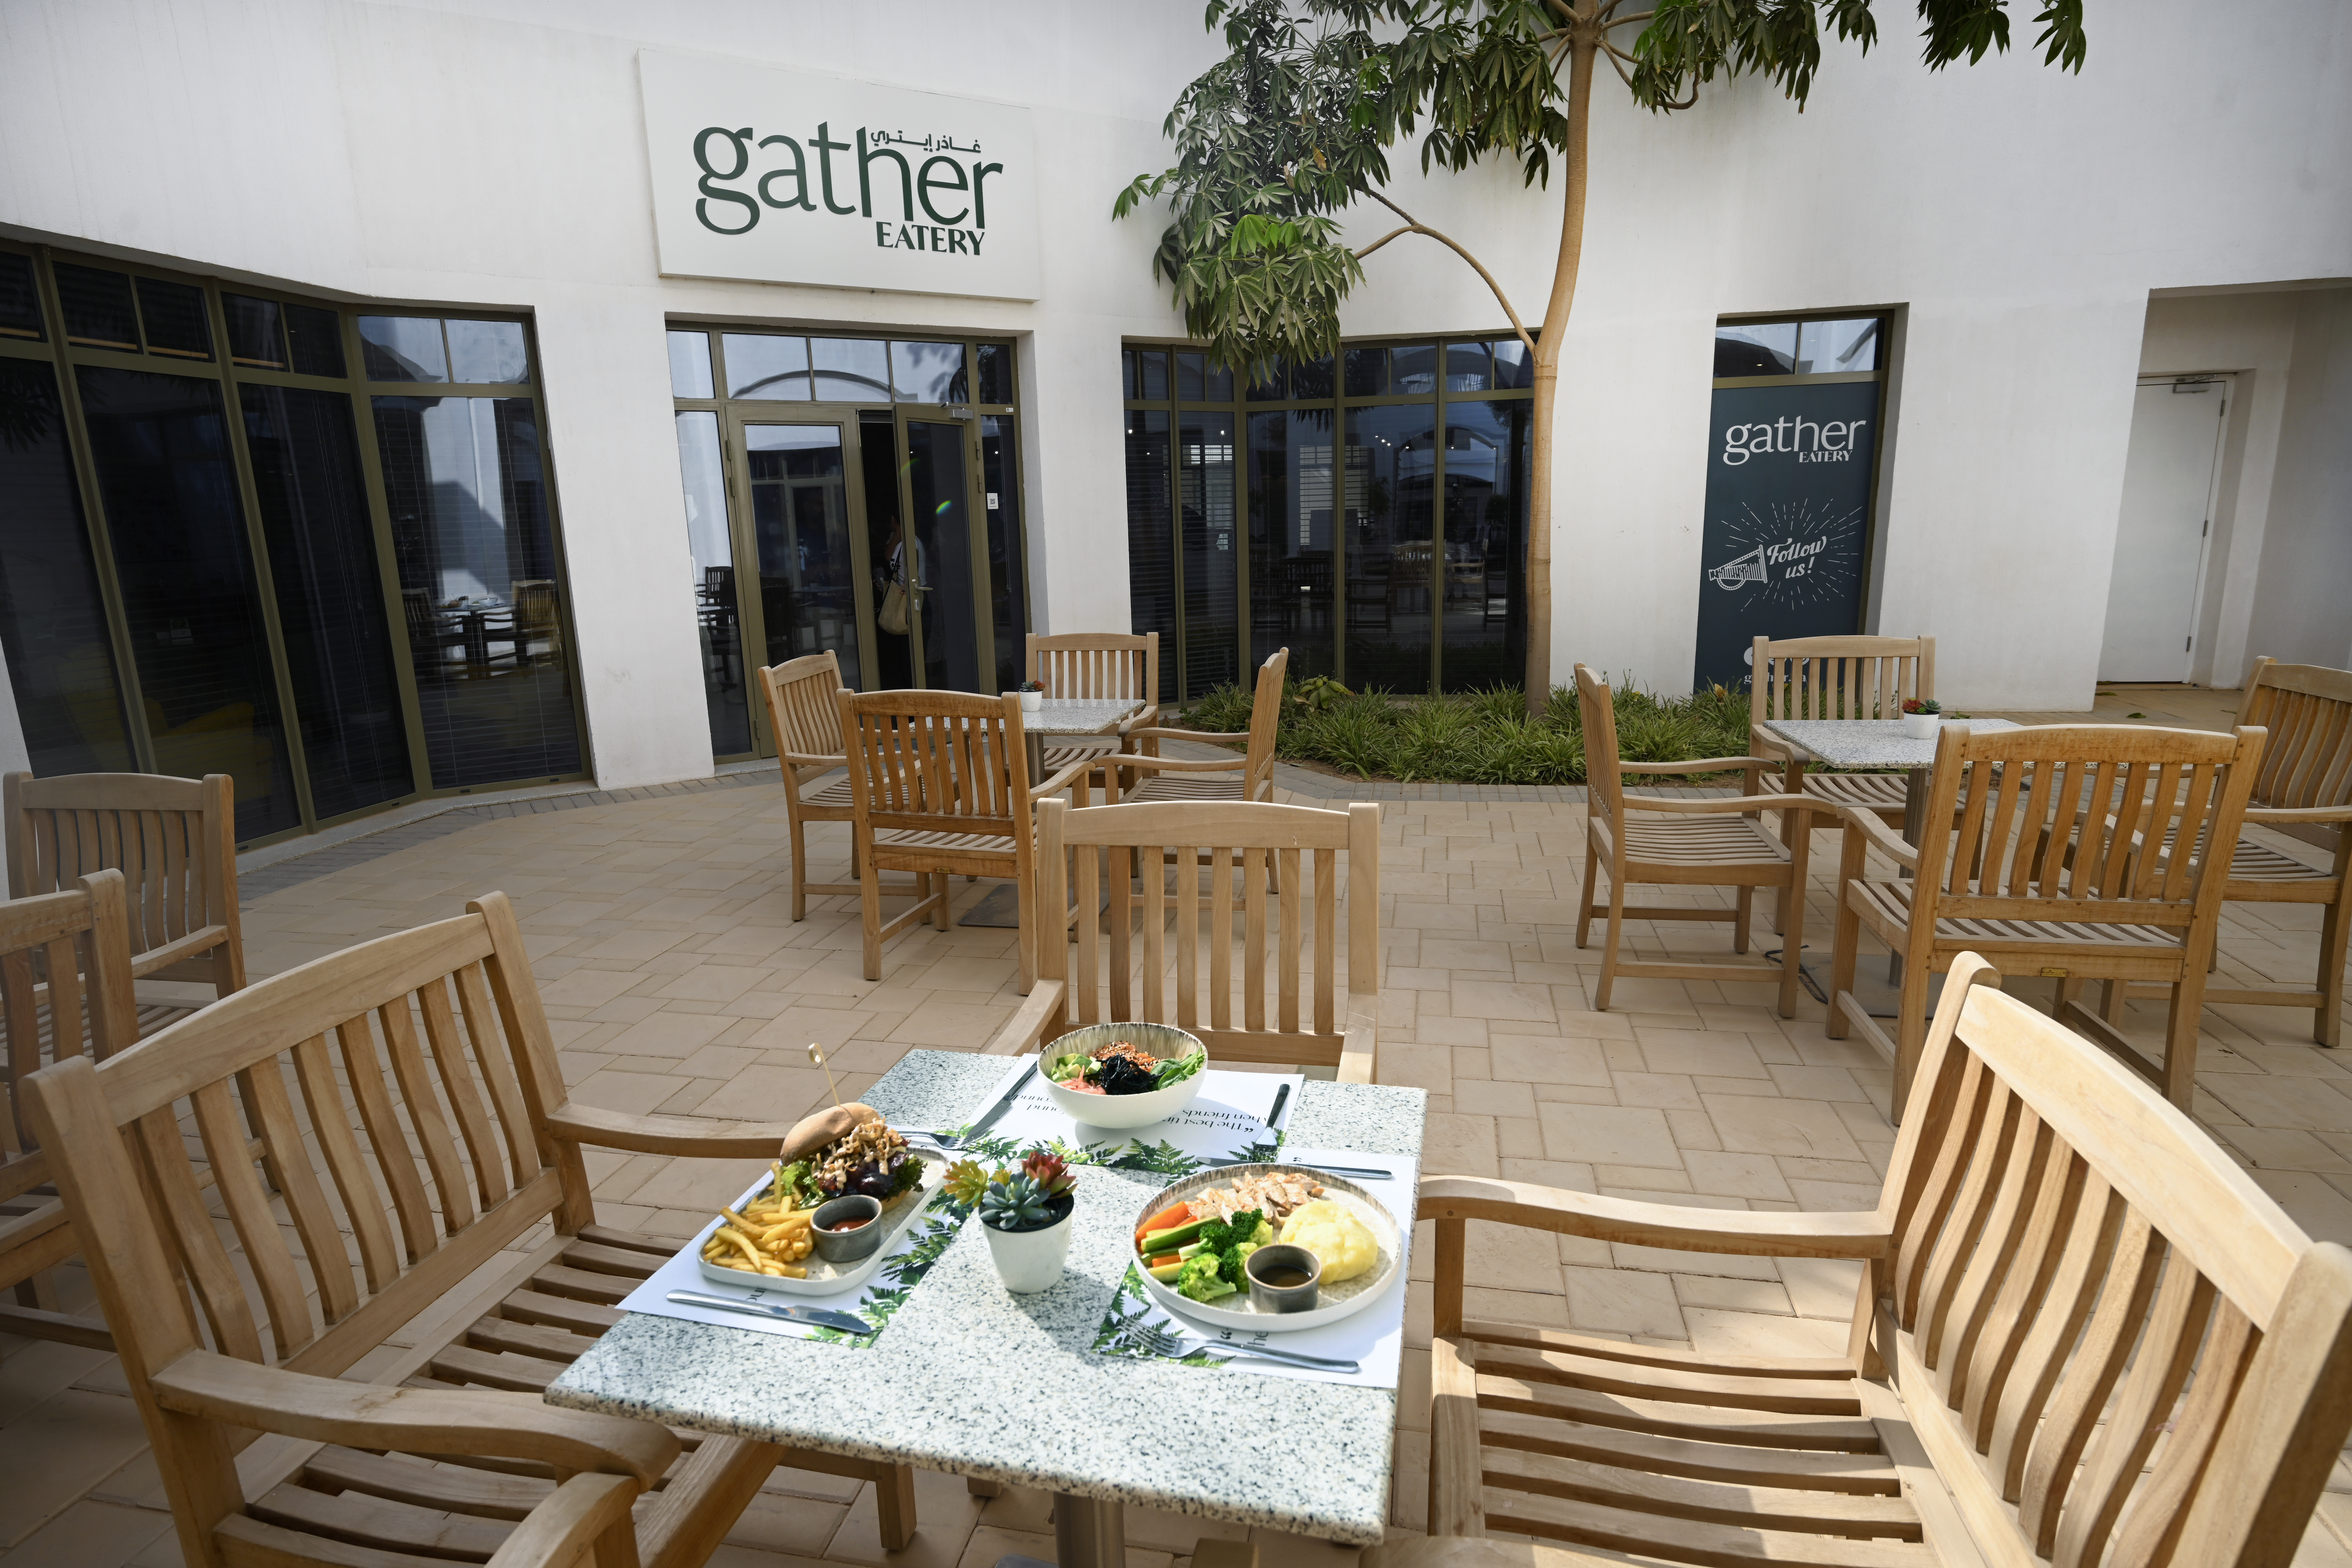 Gather Restaurant